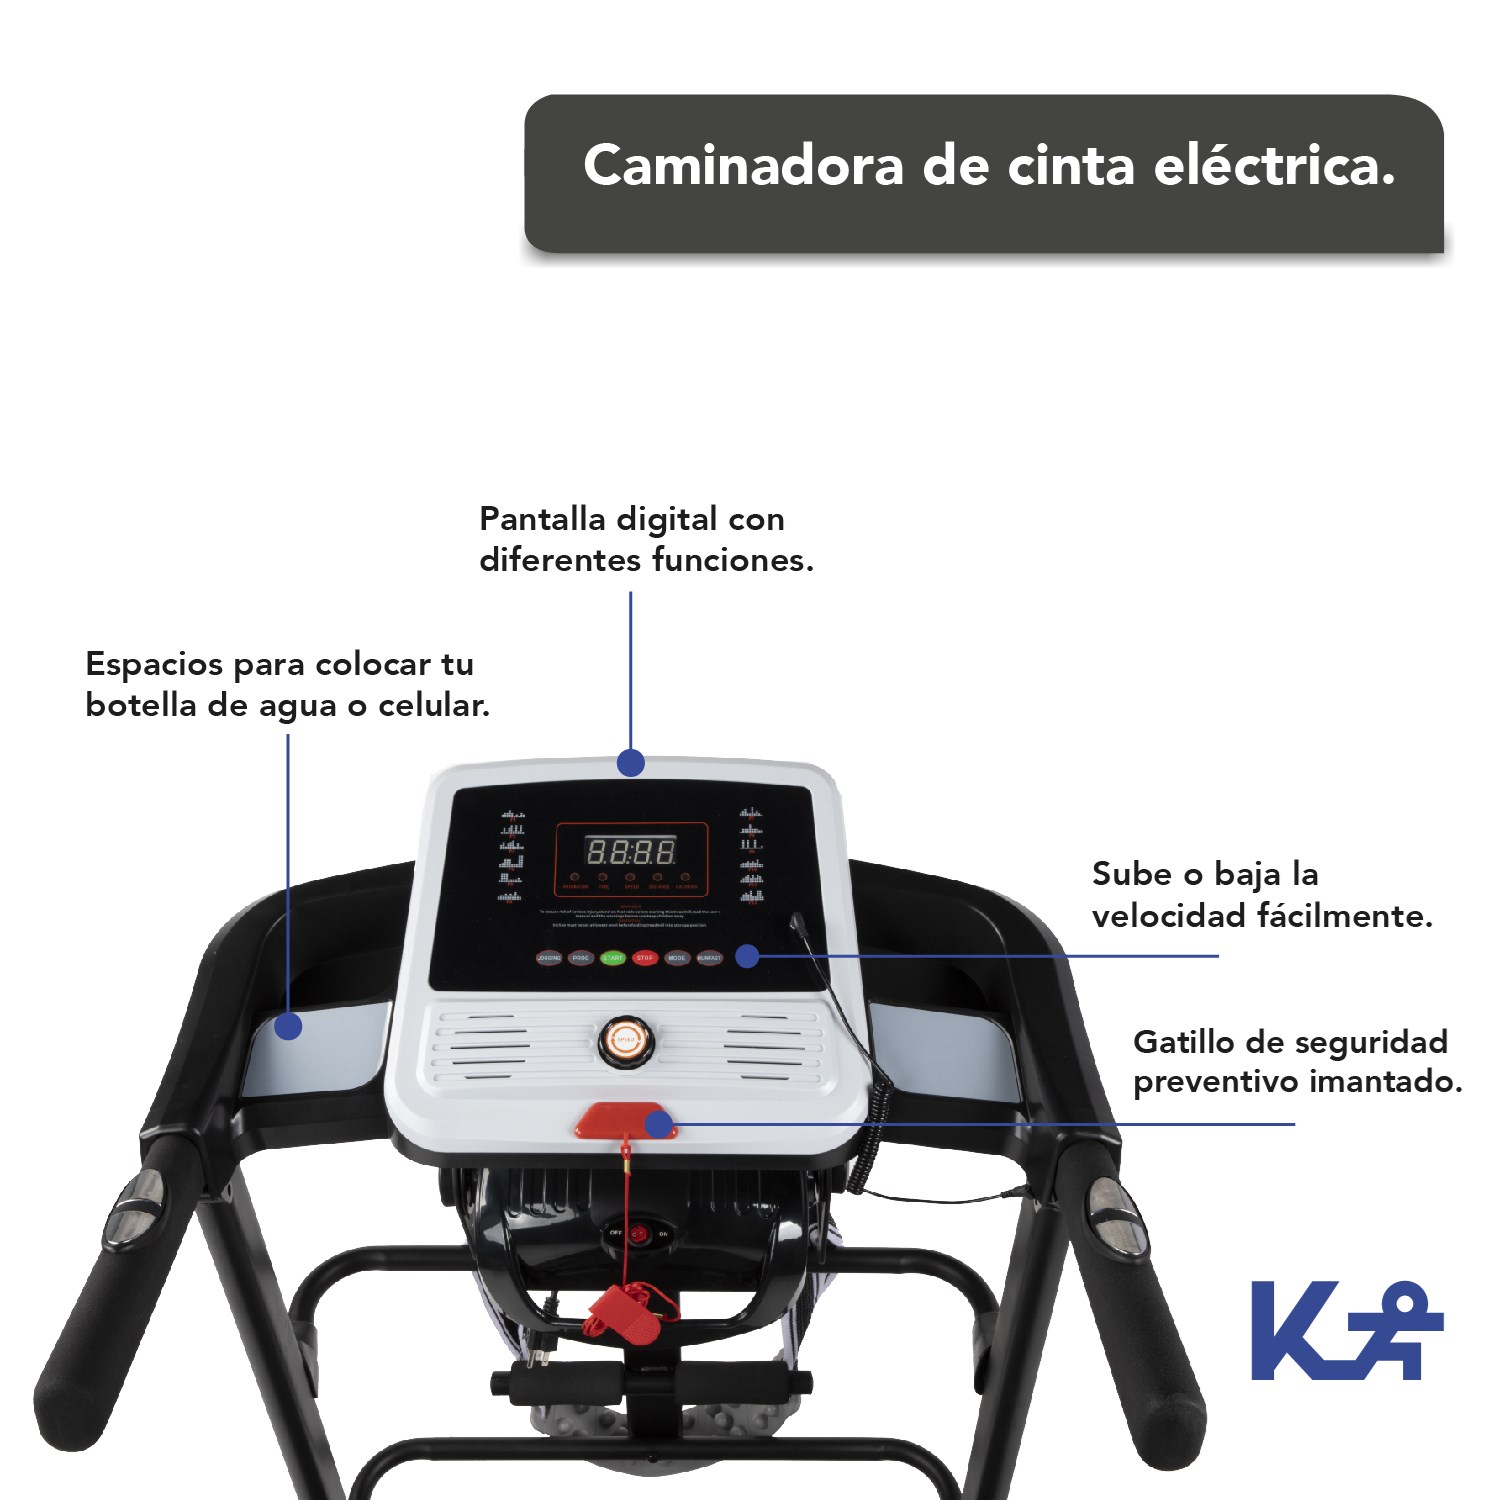 Caminadora Cinta de Correr Electrica Hogar Gym 110 V 2.5 HP con Display 42-16 Kingsman